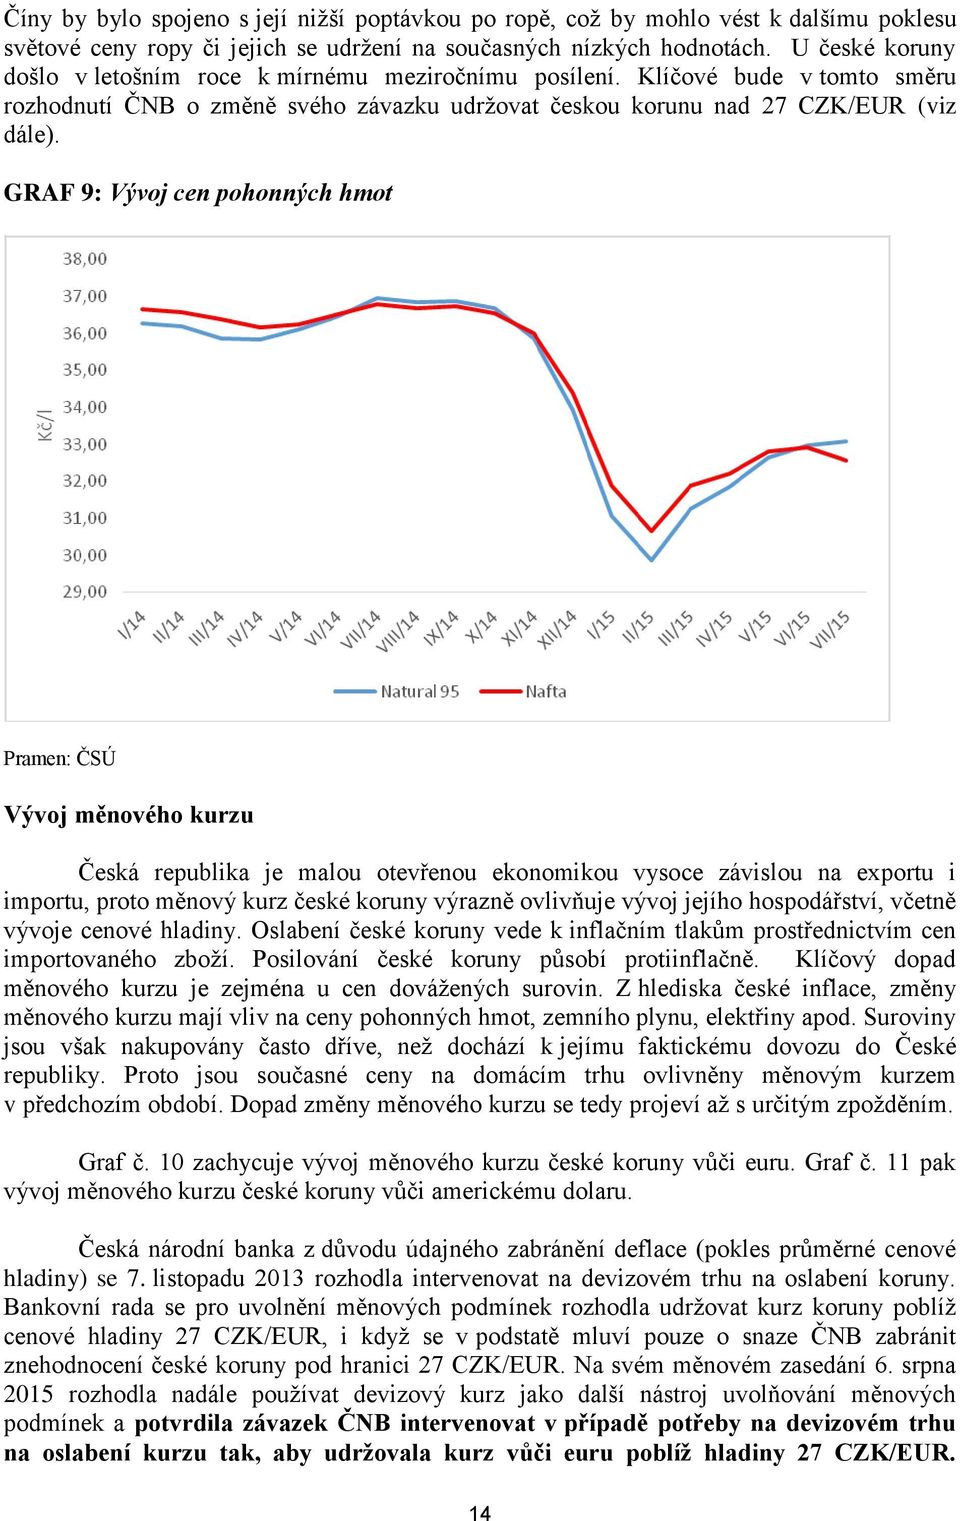 GRAF 9: Vývoj cen pohonných hmot Pramen: ČSÚ Vývoj měnového kurzu Česká republika je malou otevřenou ekonomikou vysoce závislou na exportu i importu, proto měnový kurz české koruny výrazně ovlivňuje